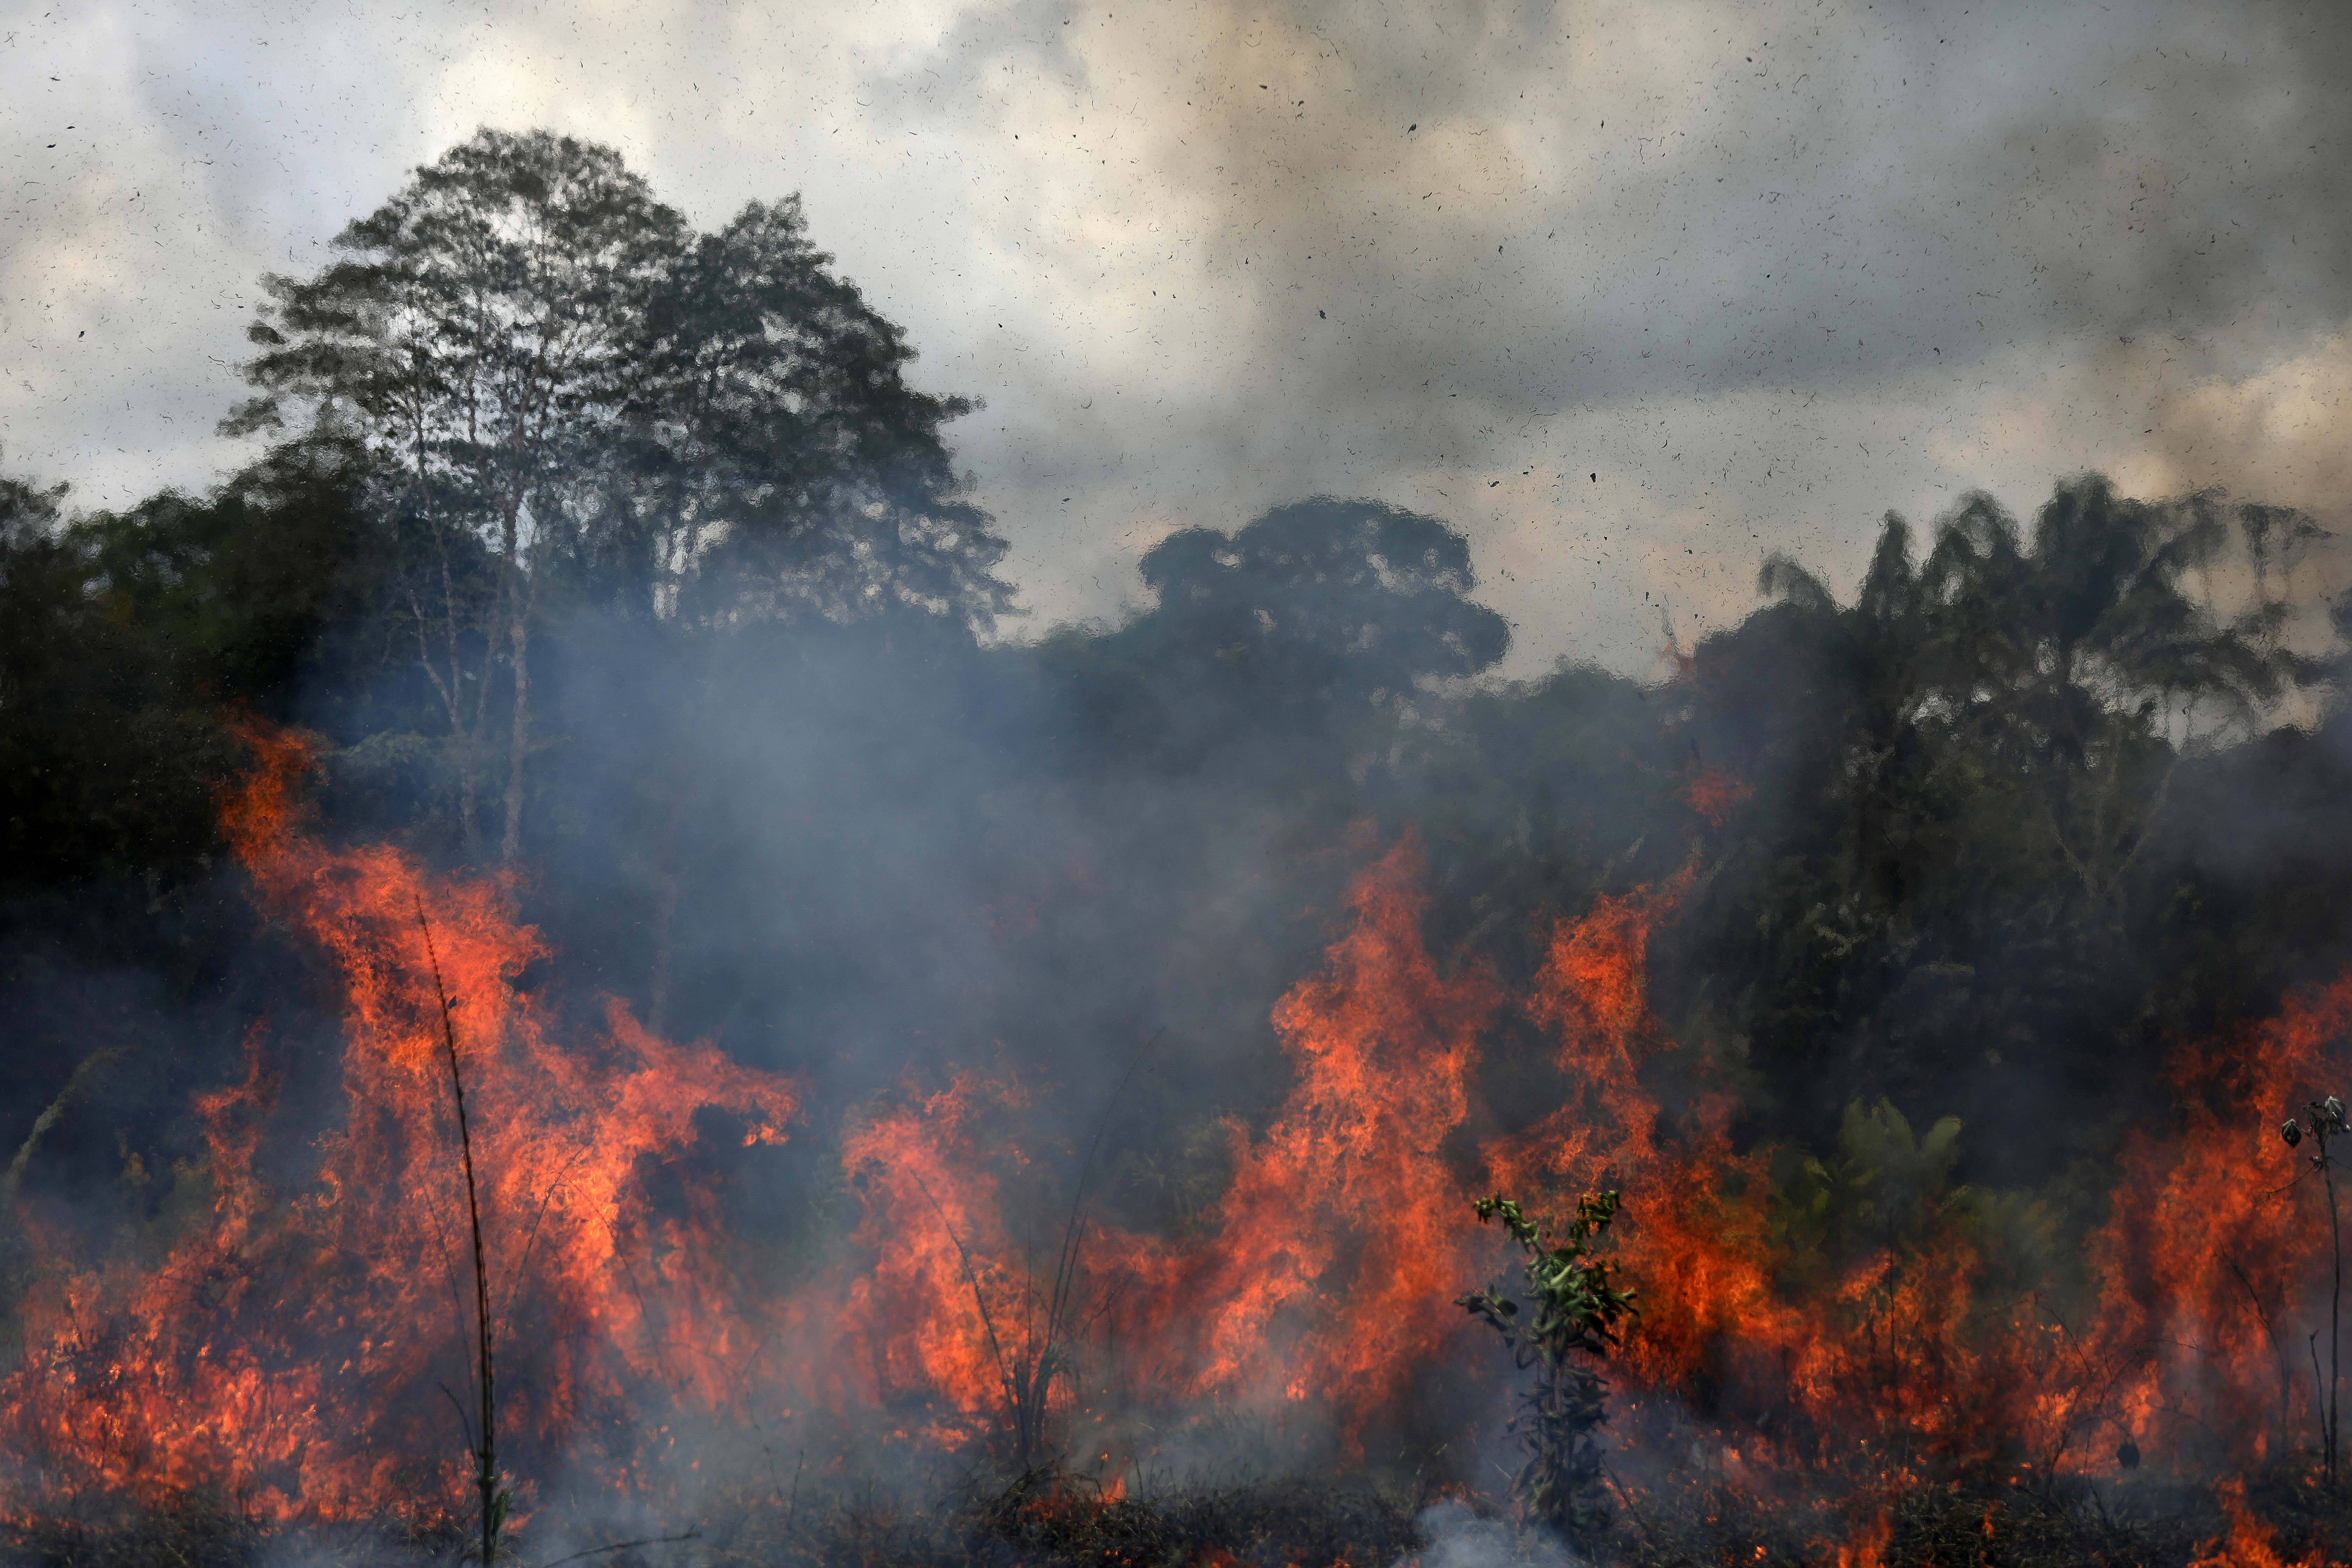 巴西亚马孙雨林连年遭砍伐和火灾,图自澎湃影像